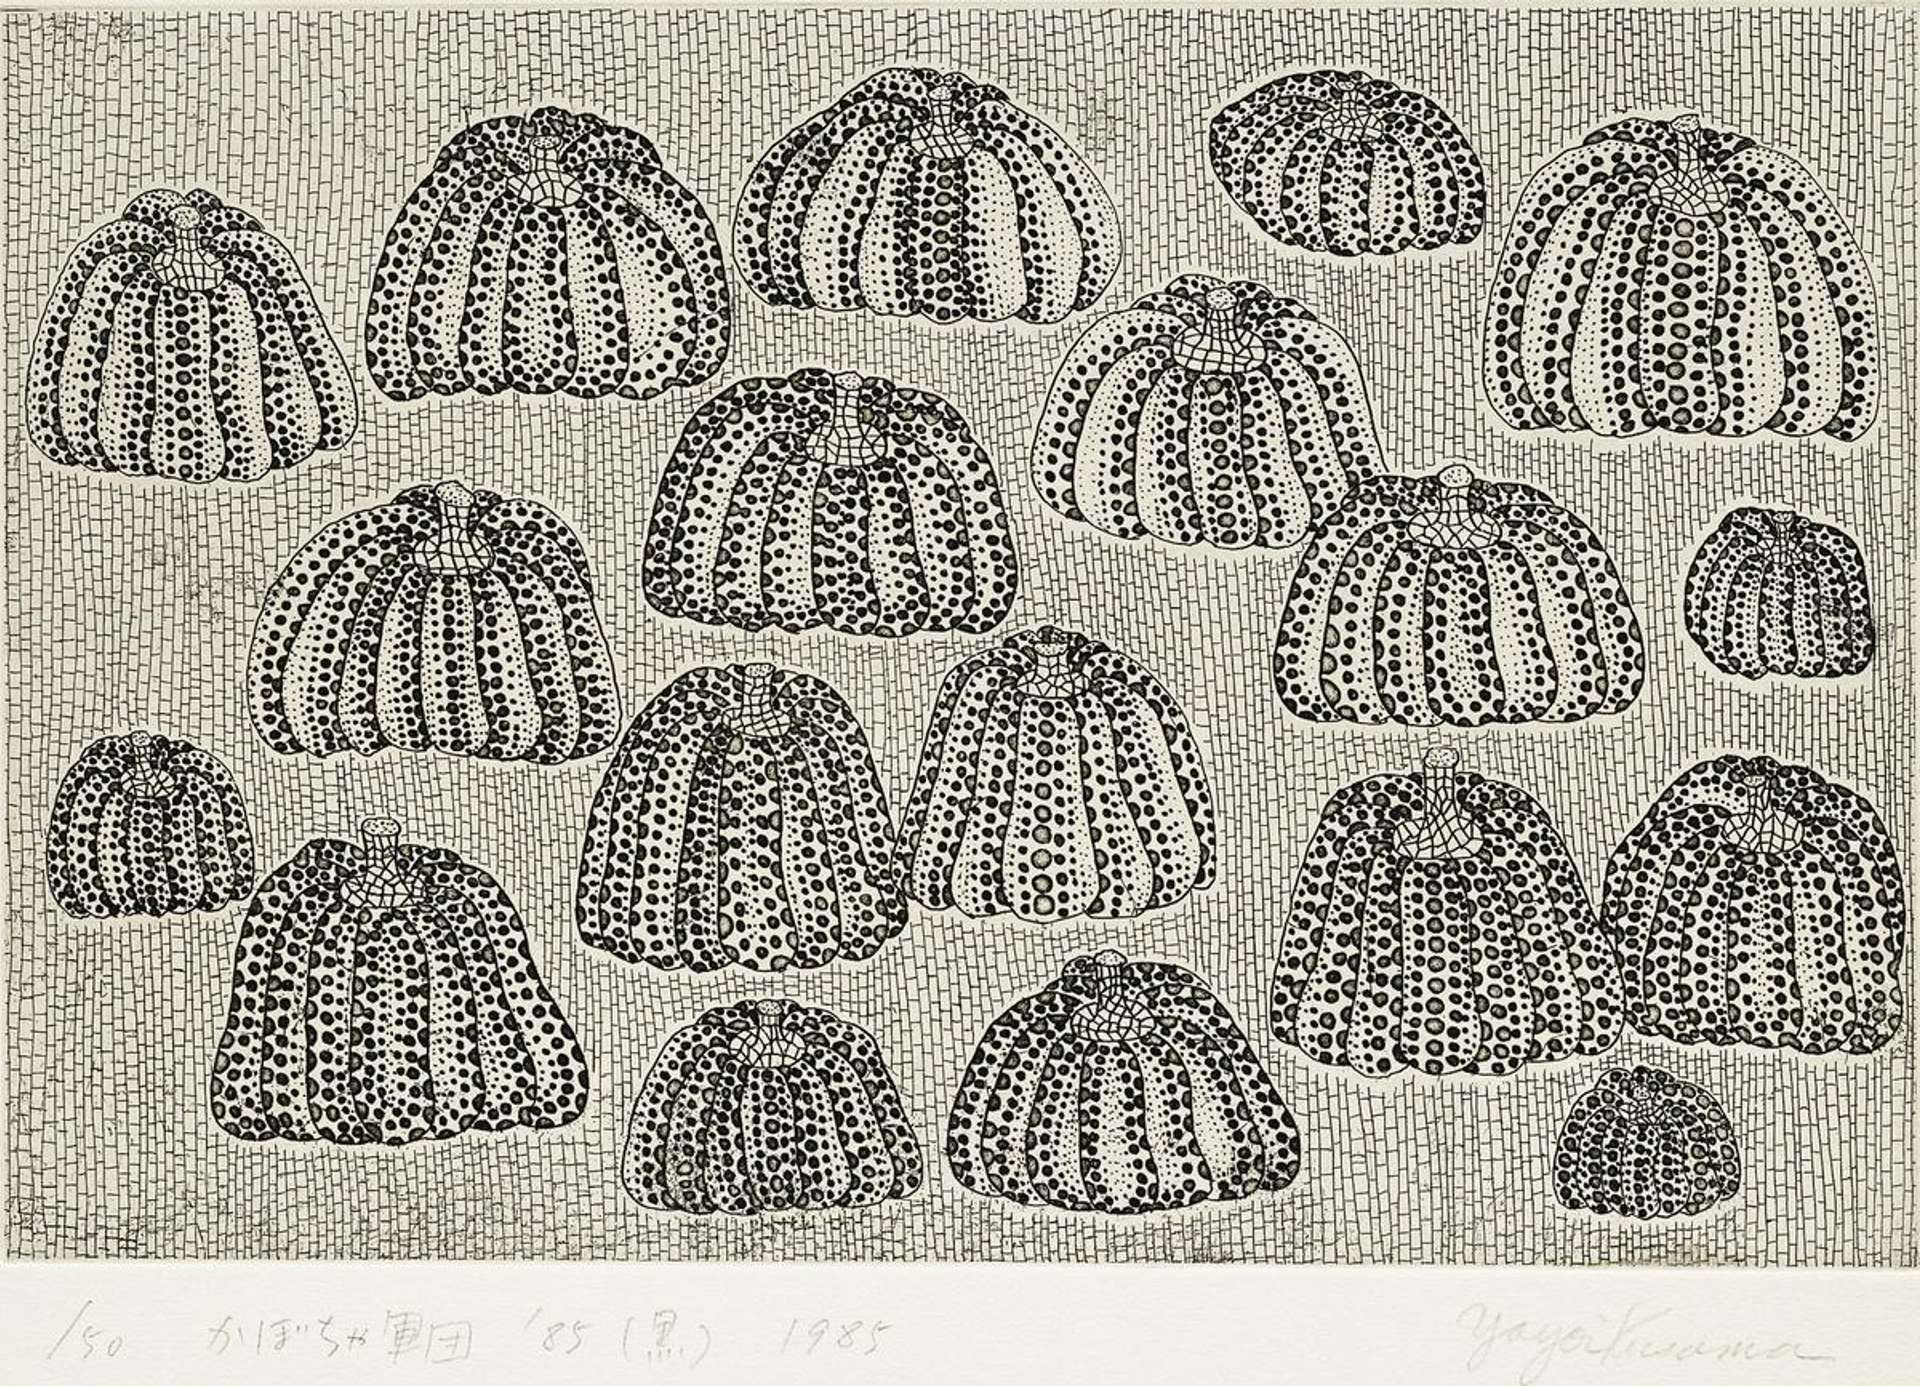 Pumpkin Army (black and white) - Signed Print by Yayoi Kusama 1985 - MyArtBroker